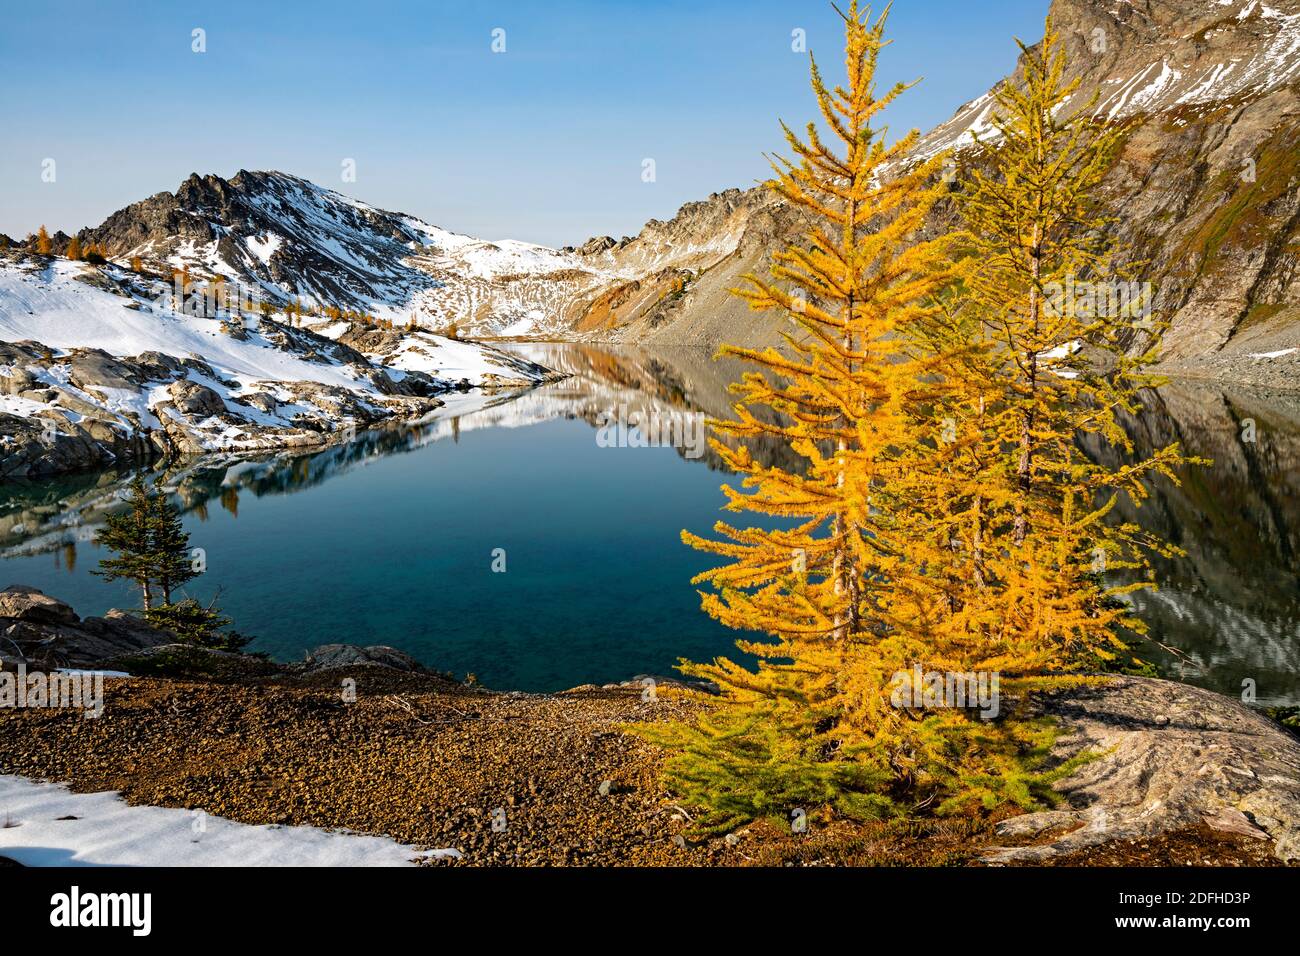 WA18669-00...WASHINGTON - temps d'automne à Upper Ice Lake, dans la région sauvage de Glacier Peak, dans la forêt nationale de Wenatchee. Banque D'Images